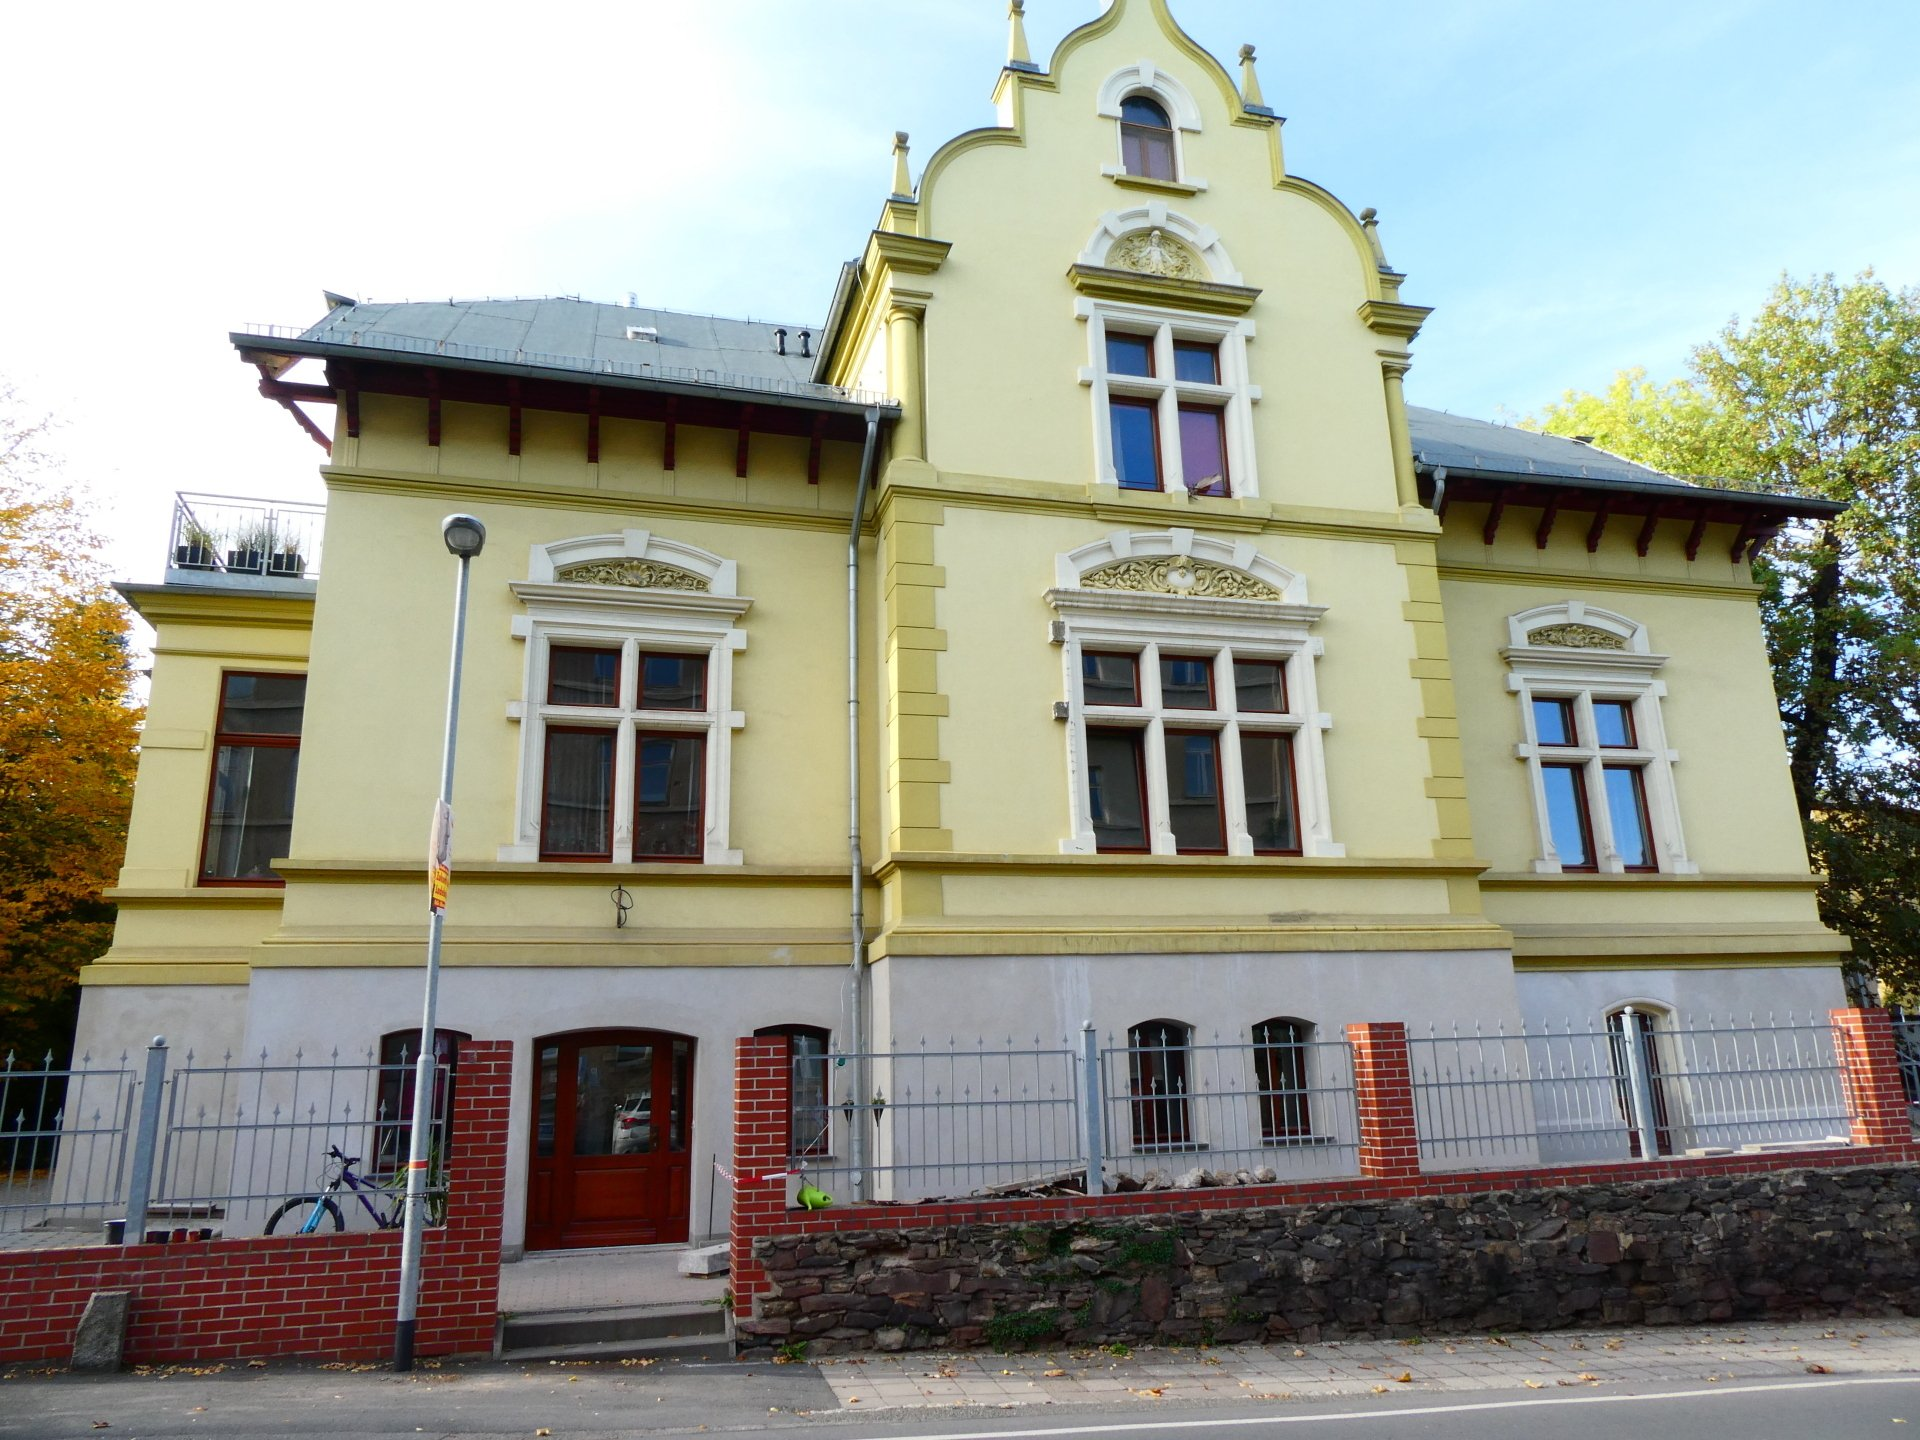 Planungsbüro Sprigade in sanierter Villa in Pößneck